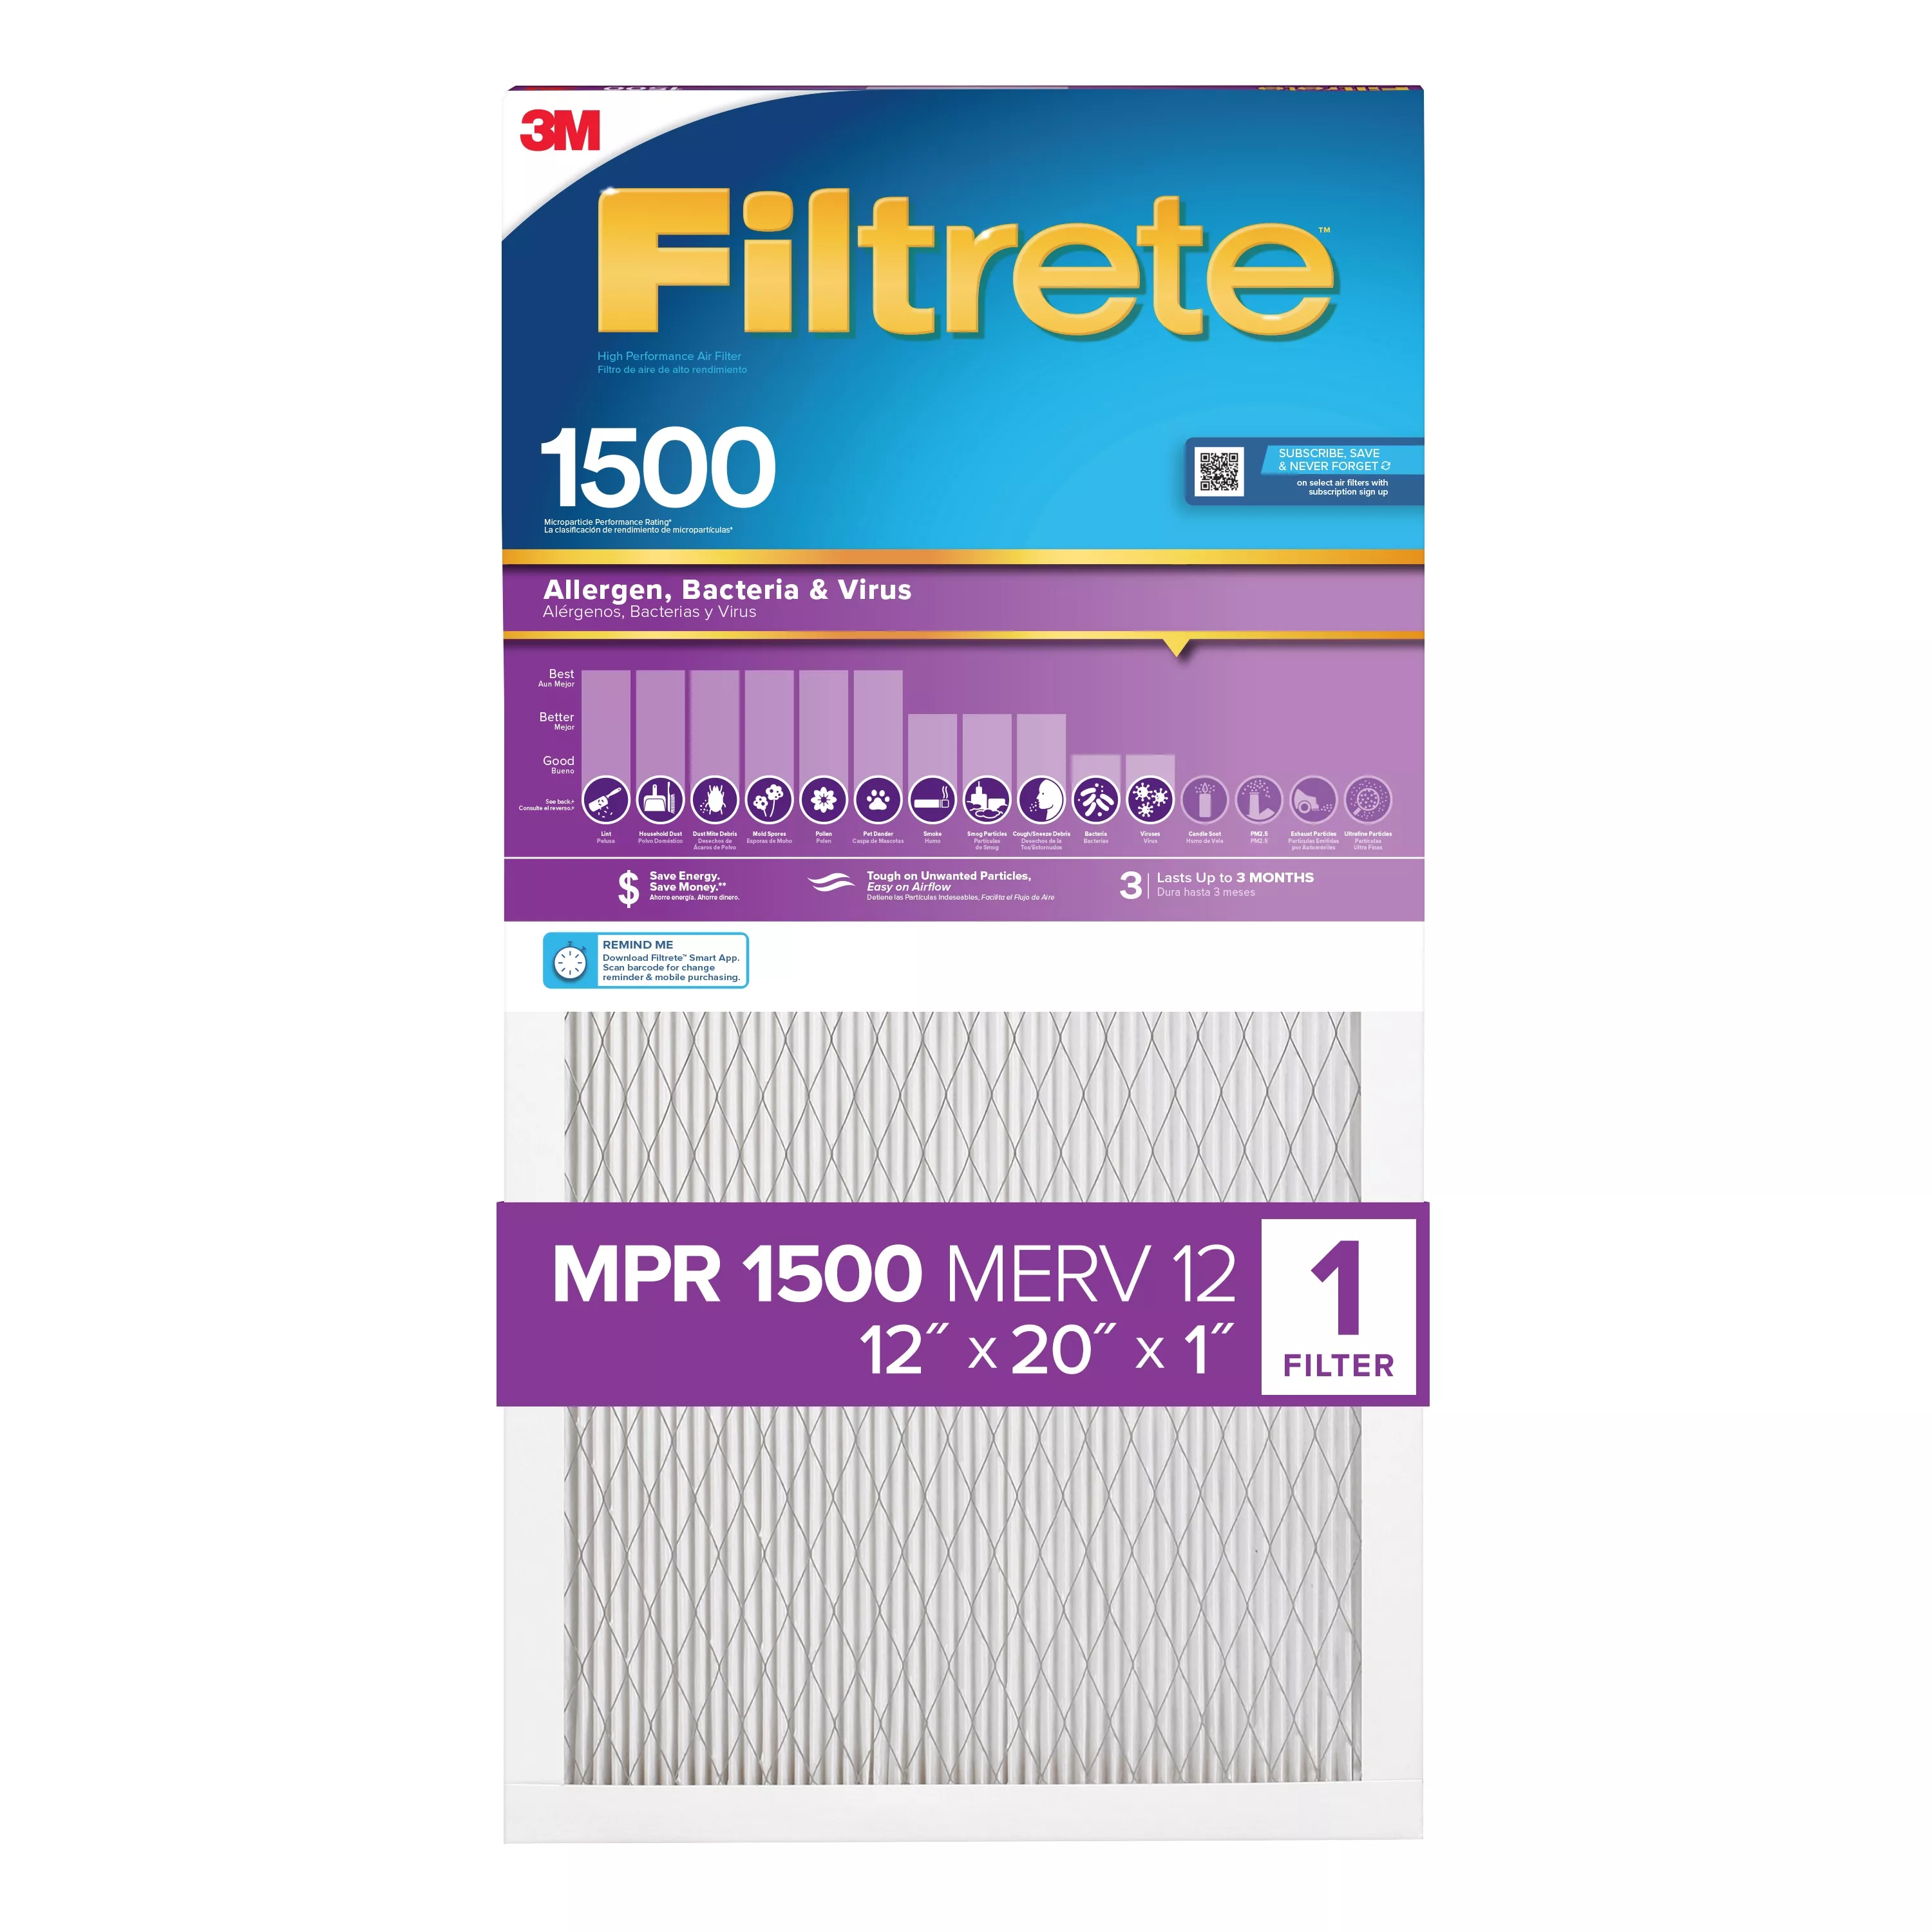 Filtrete™ High Performance Air Filter 1500 MPR 2019DC-4, 12 in x 20 in x 1 in (30.4 cm x 50.8 cm x 2.5 cm)